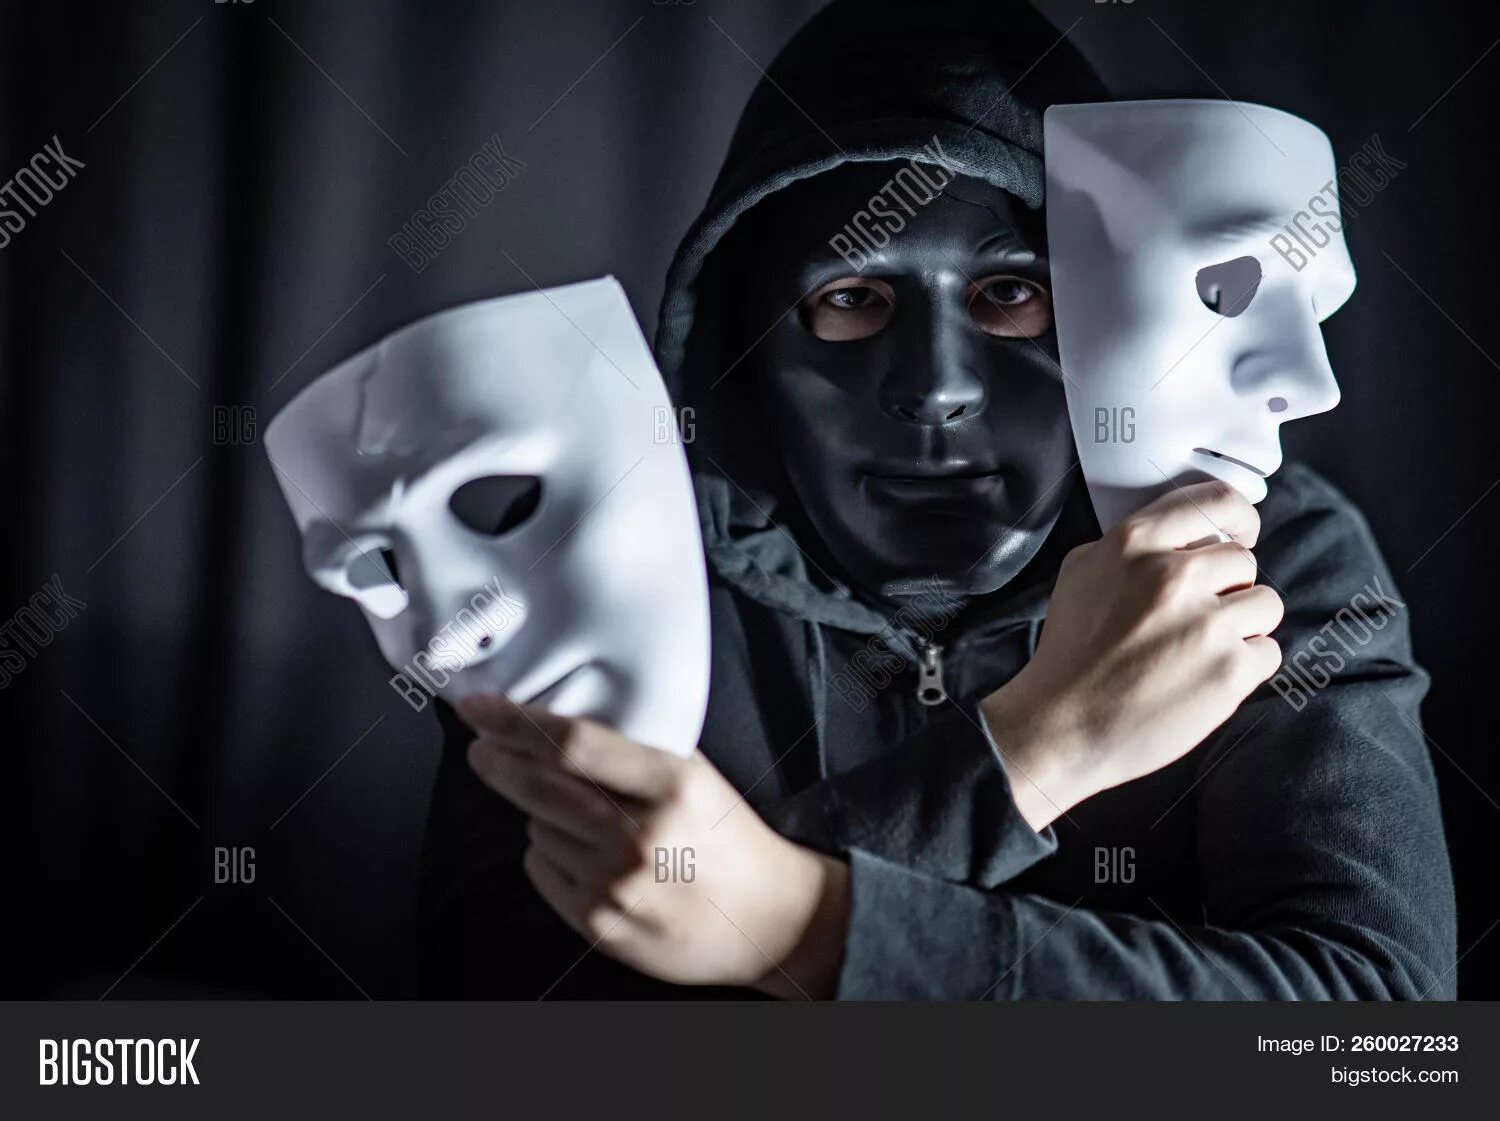 Человек в маске. Человек надевает маску. Человек в театральной маске. Человек в белой маске. Они надели маски